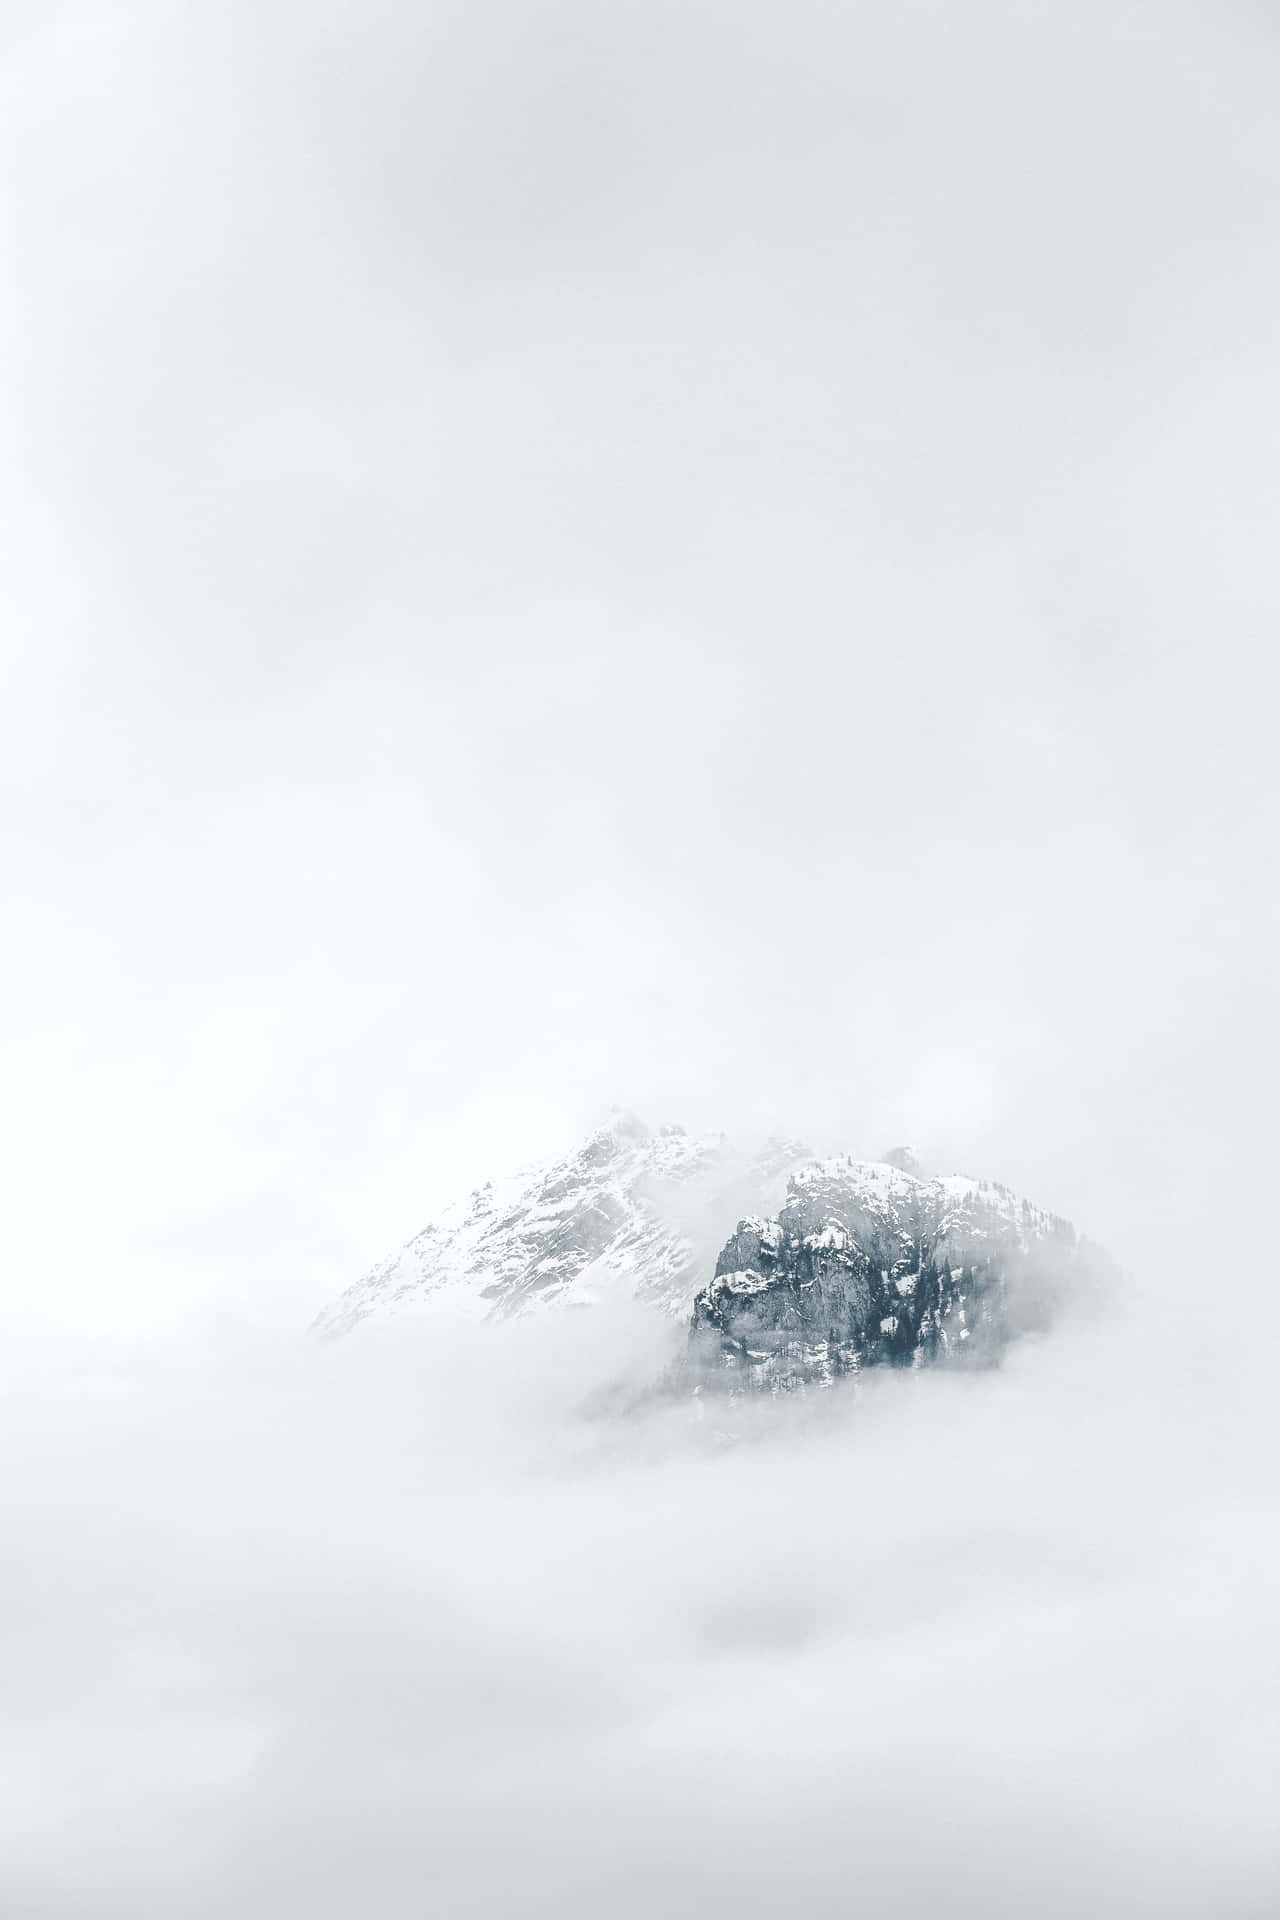 Unamontagna Avvolta Dalle Nuvole Con La Neve In Cima